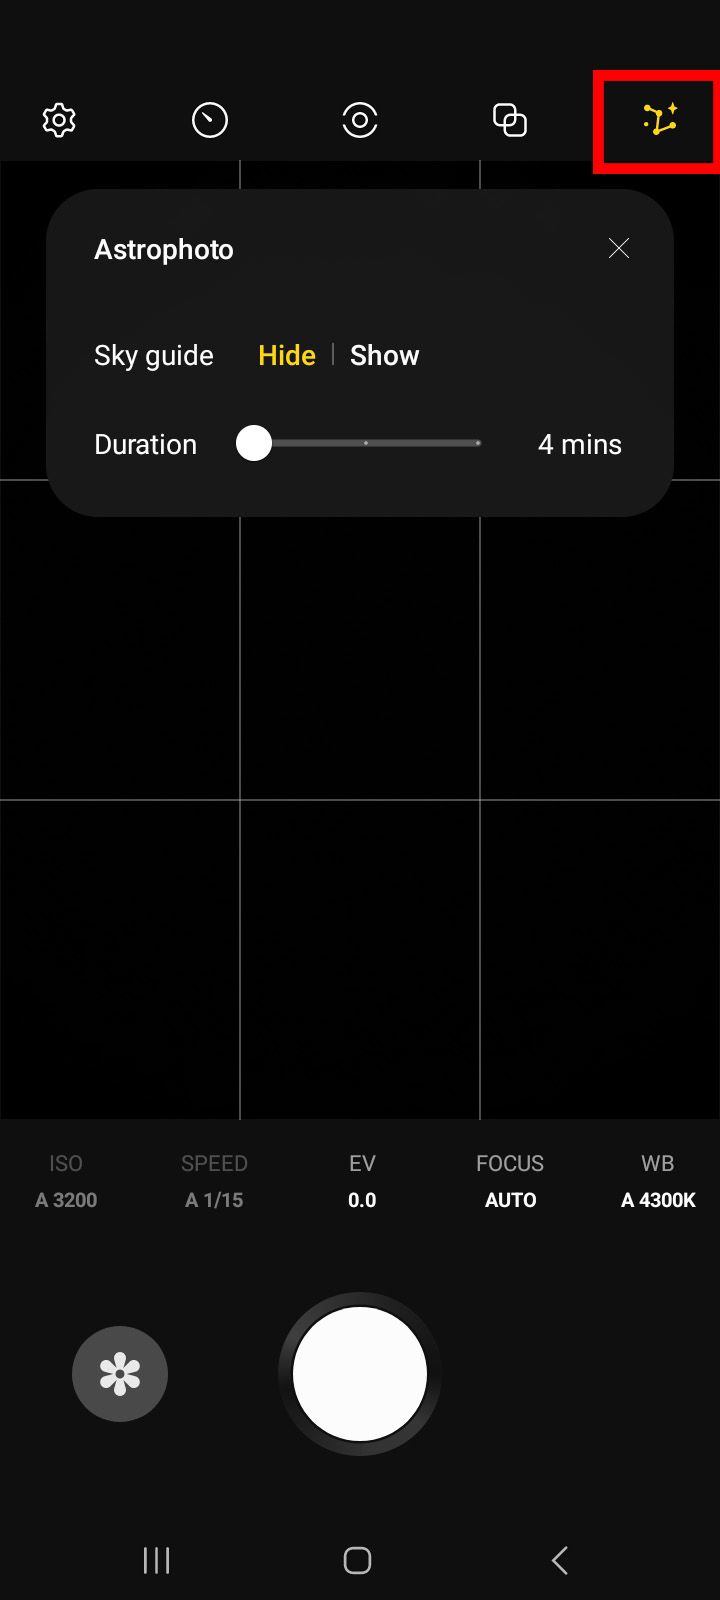 Captura de tela do aplicativo Expert RAW no modo Astrofotografia com opções para um guia do céu ao lado do ícone da constelação astrofotográfica destacado em vermelho.